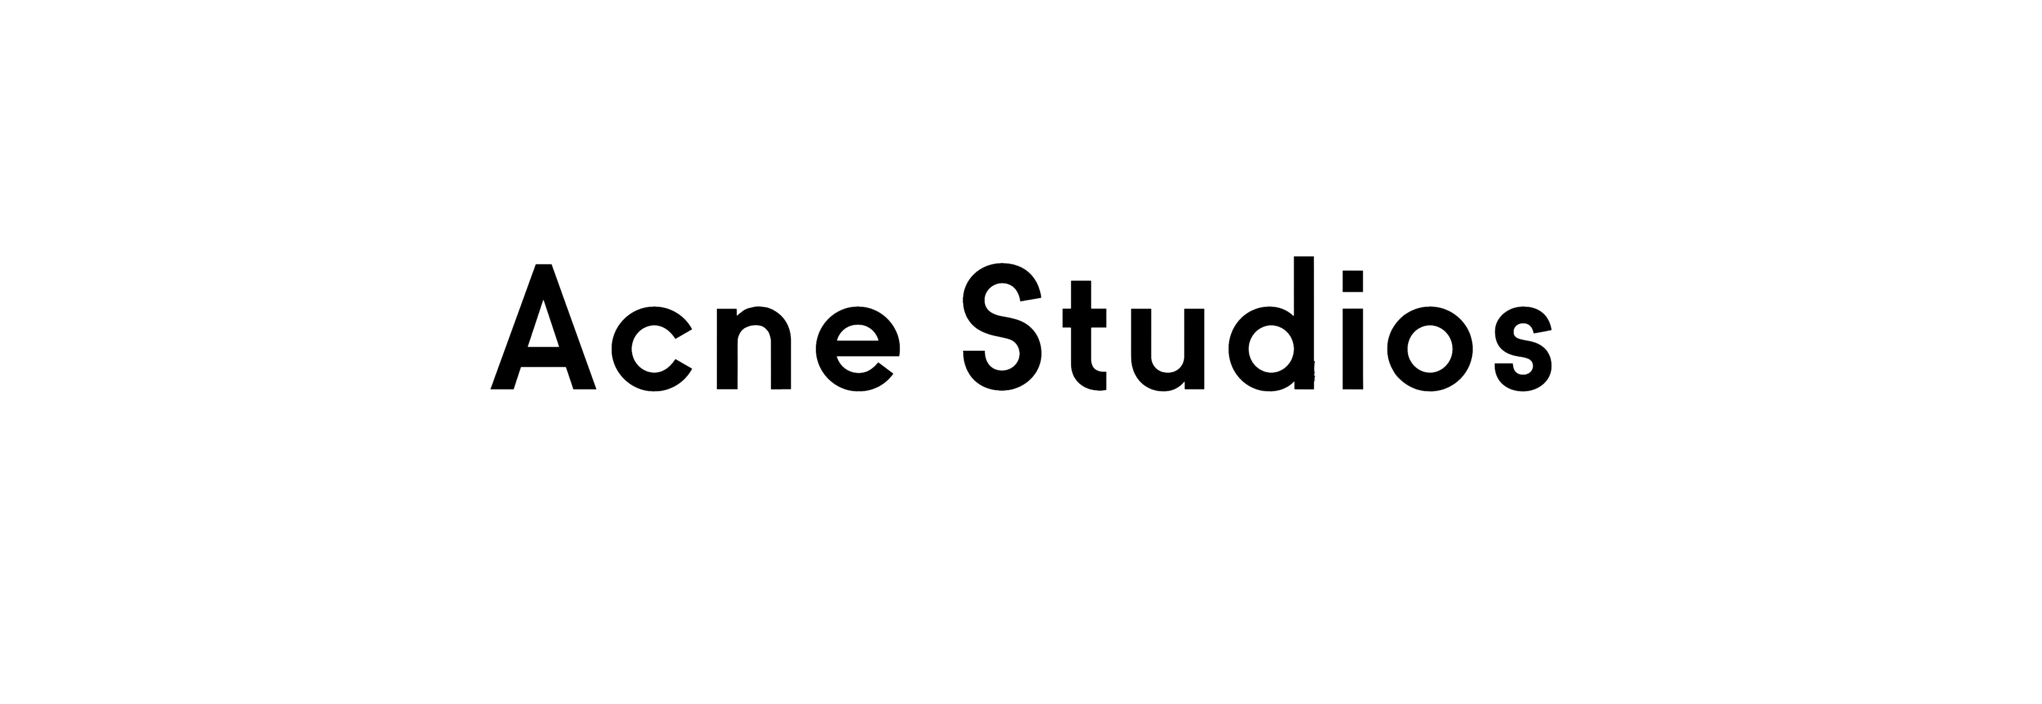 Acne Studios 下篇 | 这个矛盾神奇的品牌 - 知乎